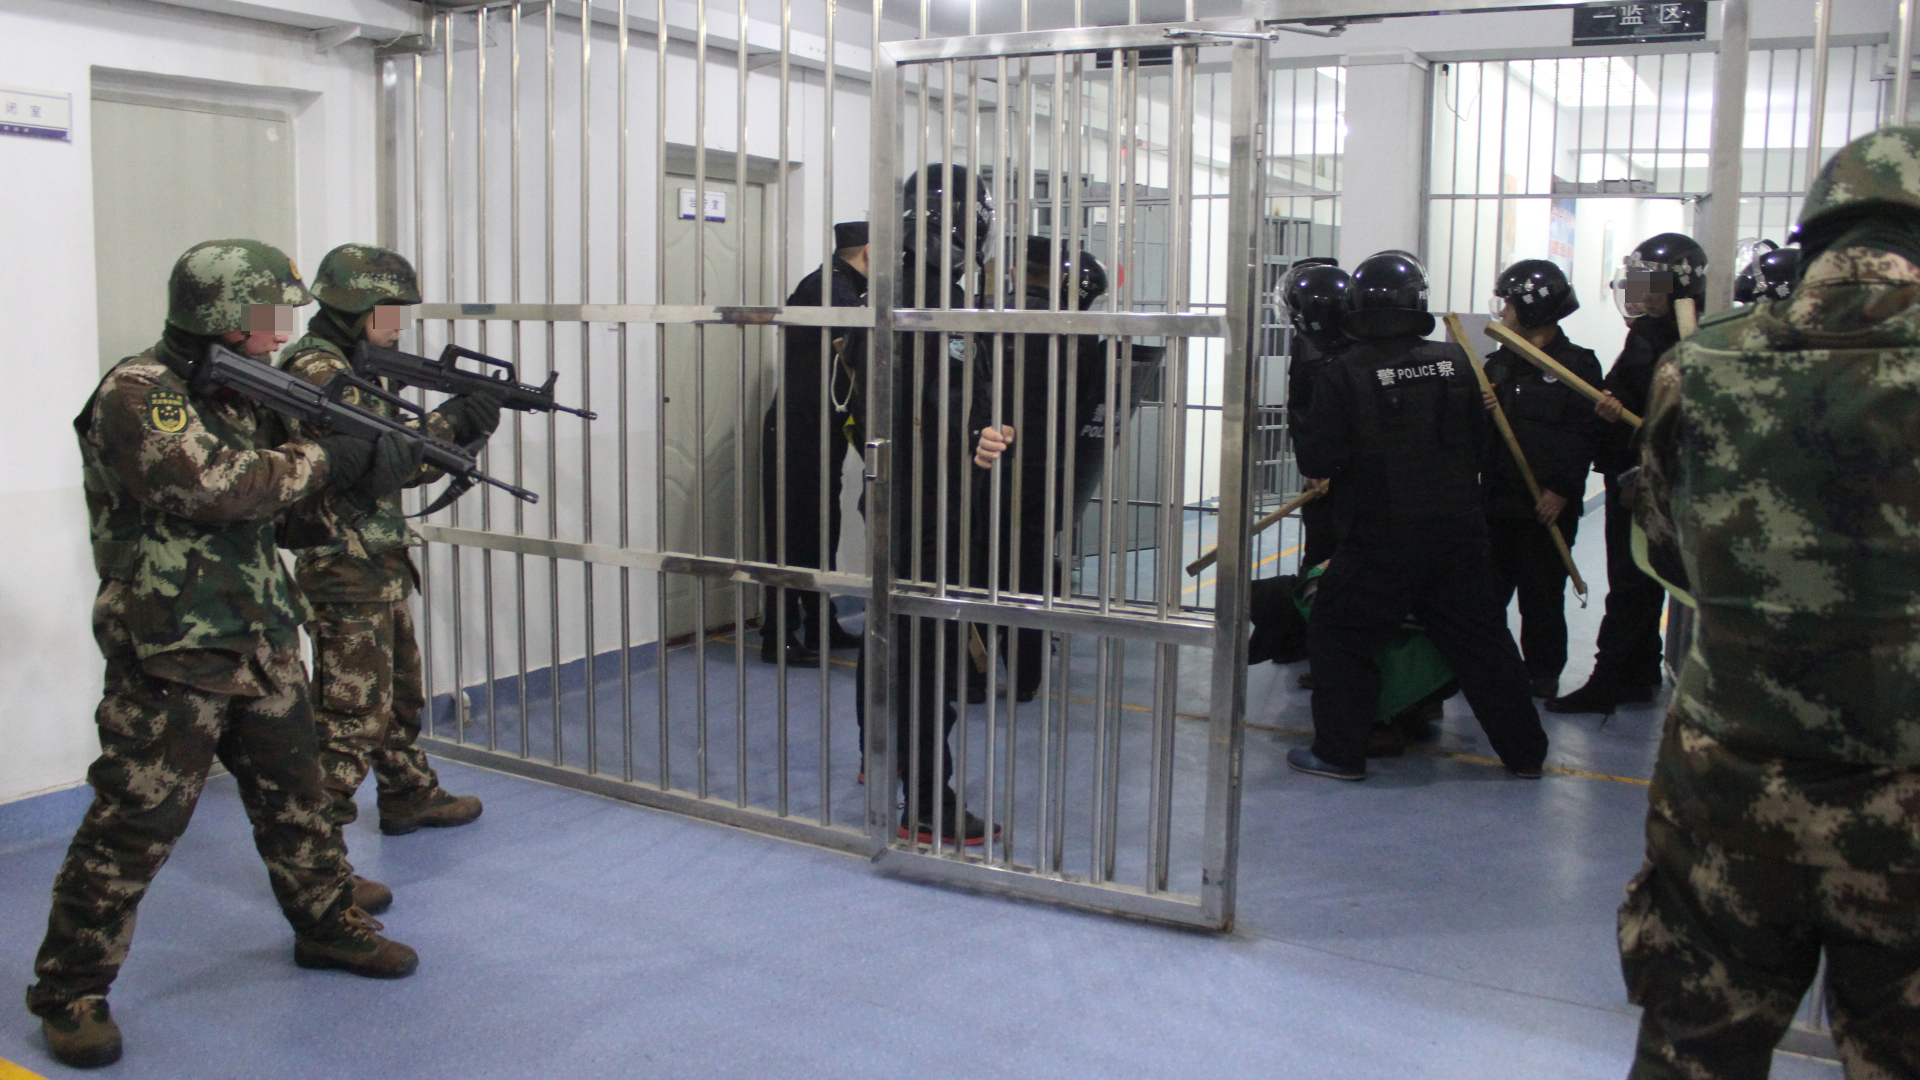 Mit Holzknüppeln bewaffnete Sicherheitskräfte führen einen Inhaftierten in Hand- und Fußfesseln ab. | Xinjiang Police Files